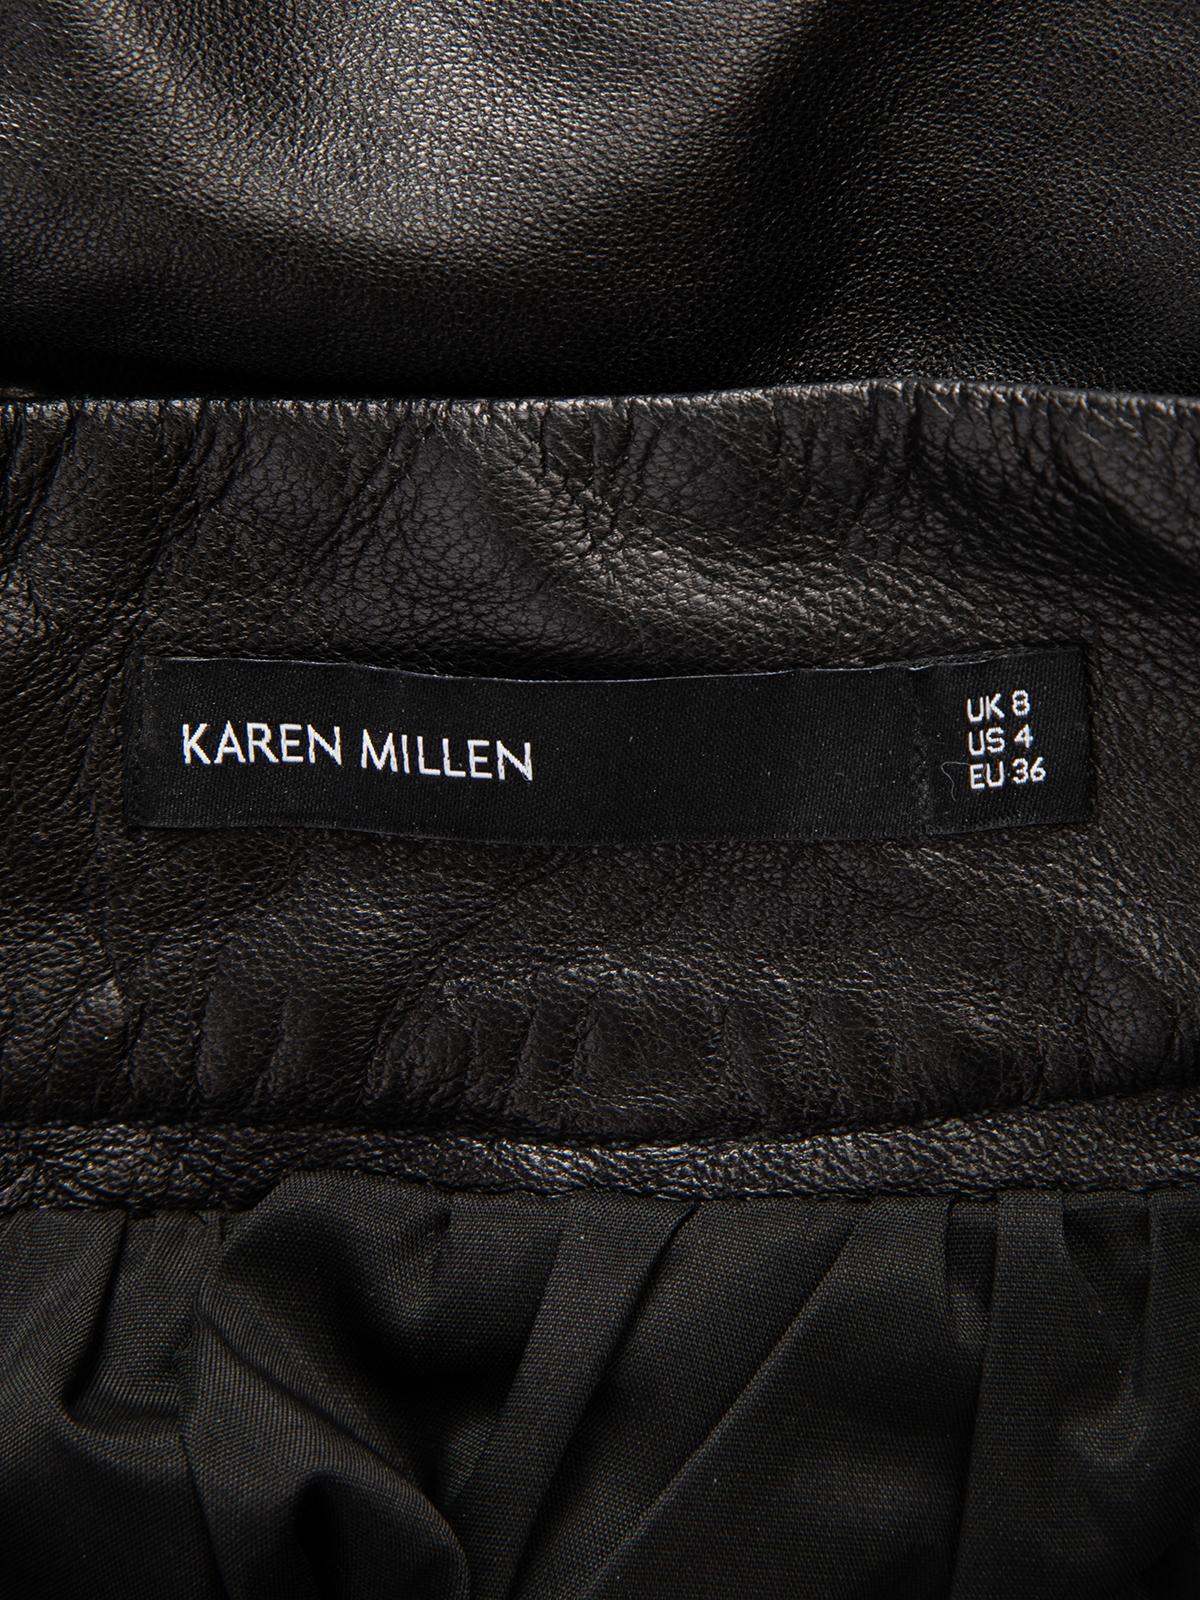 Karen Millen Women's Leather A line Skirt 2